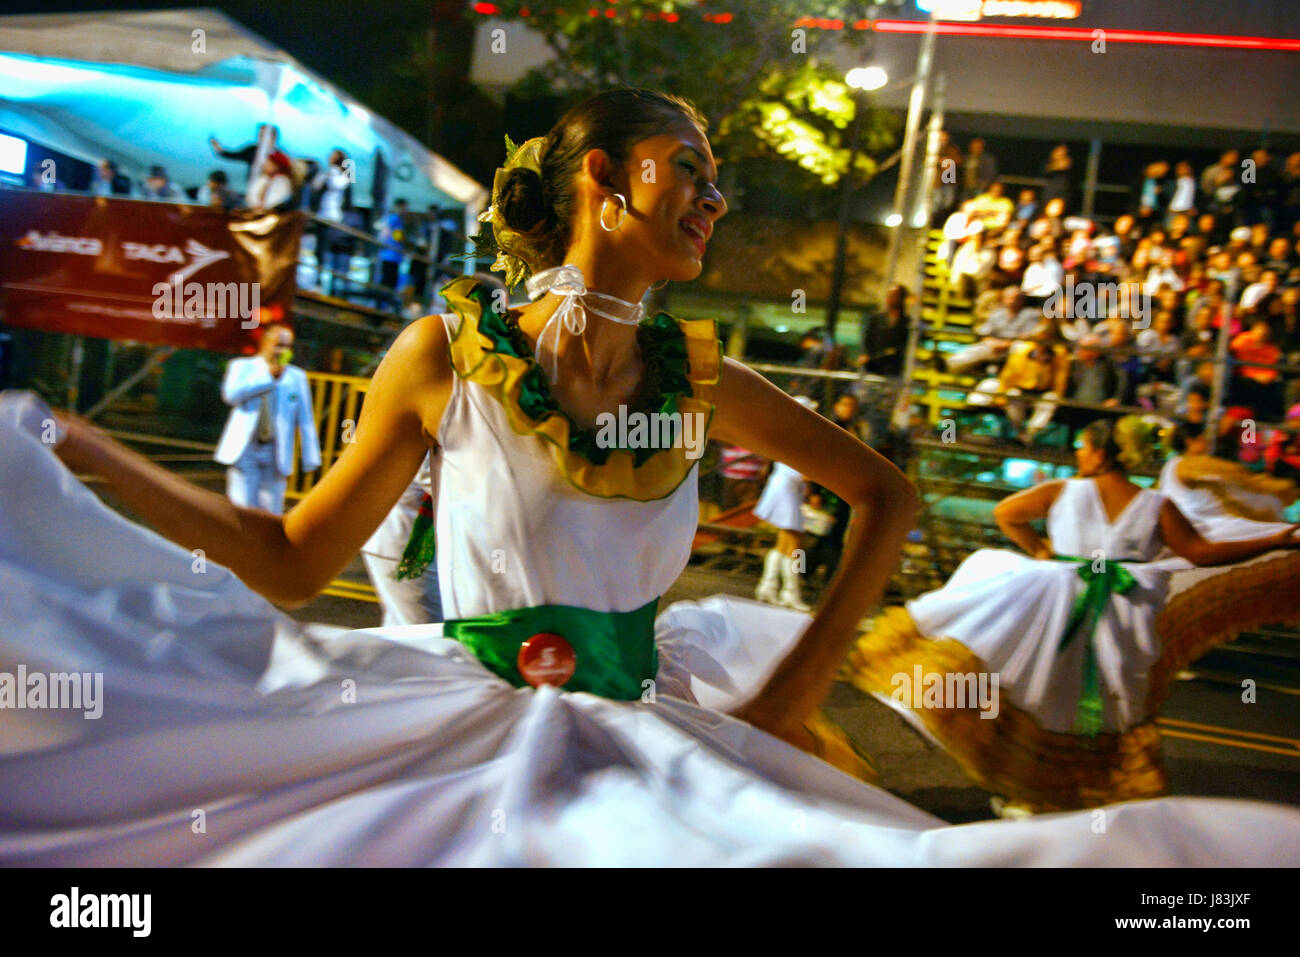 Eine Mädchen wirbelt ihr Kleid während eines Tanzes mit eines der marching Bands am Festival De La Luz, einer jährlichen Christmas Parade in San José, Costa Rica. Stockfoto